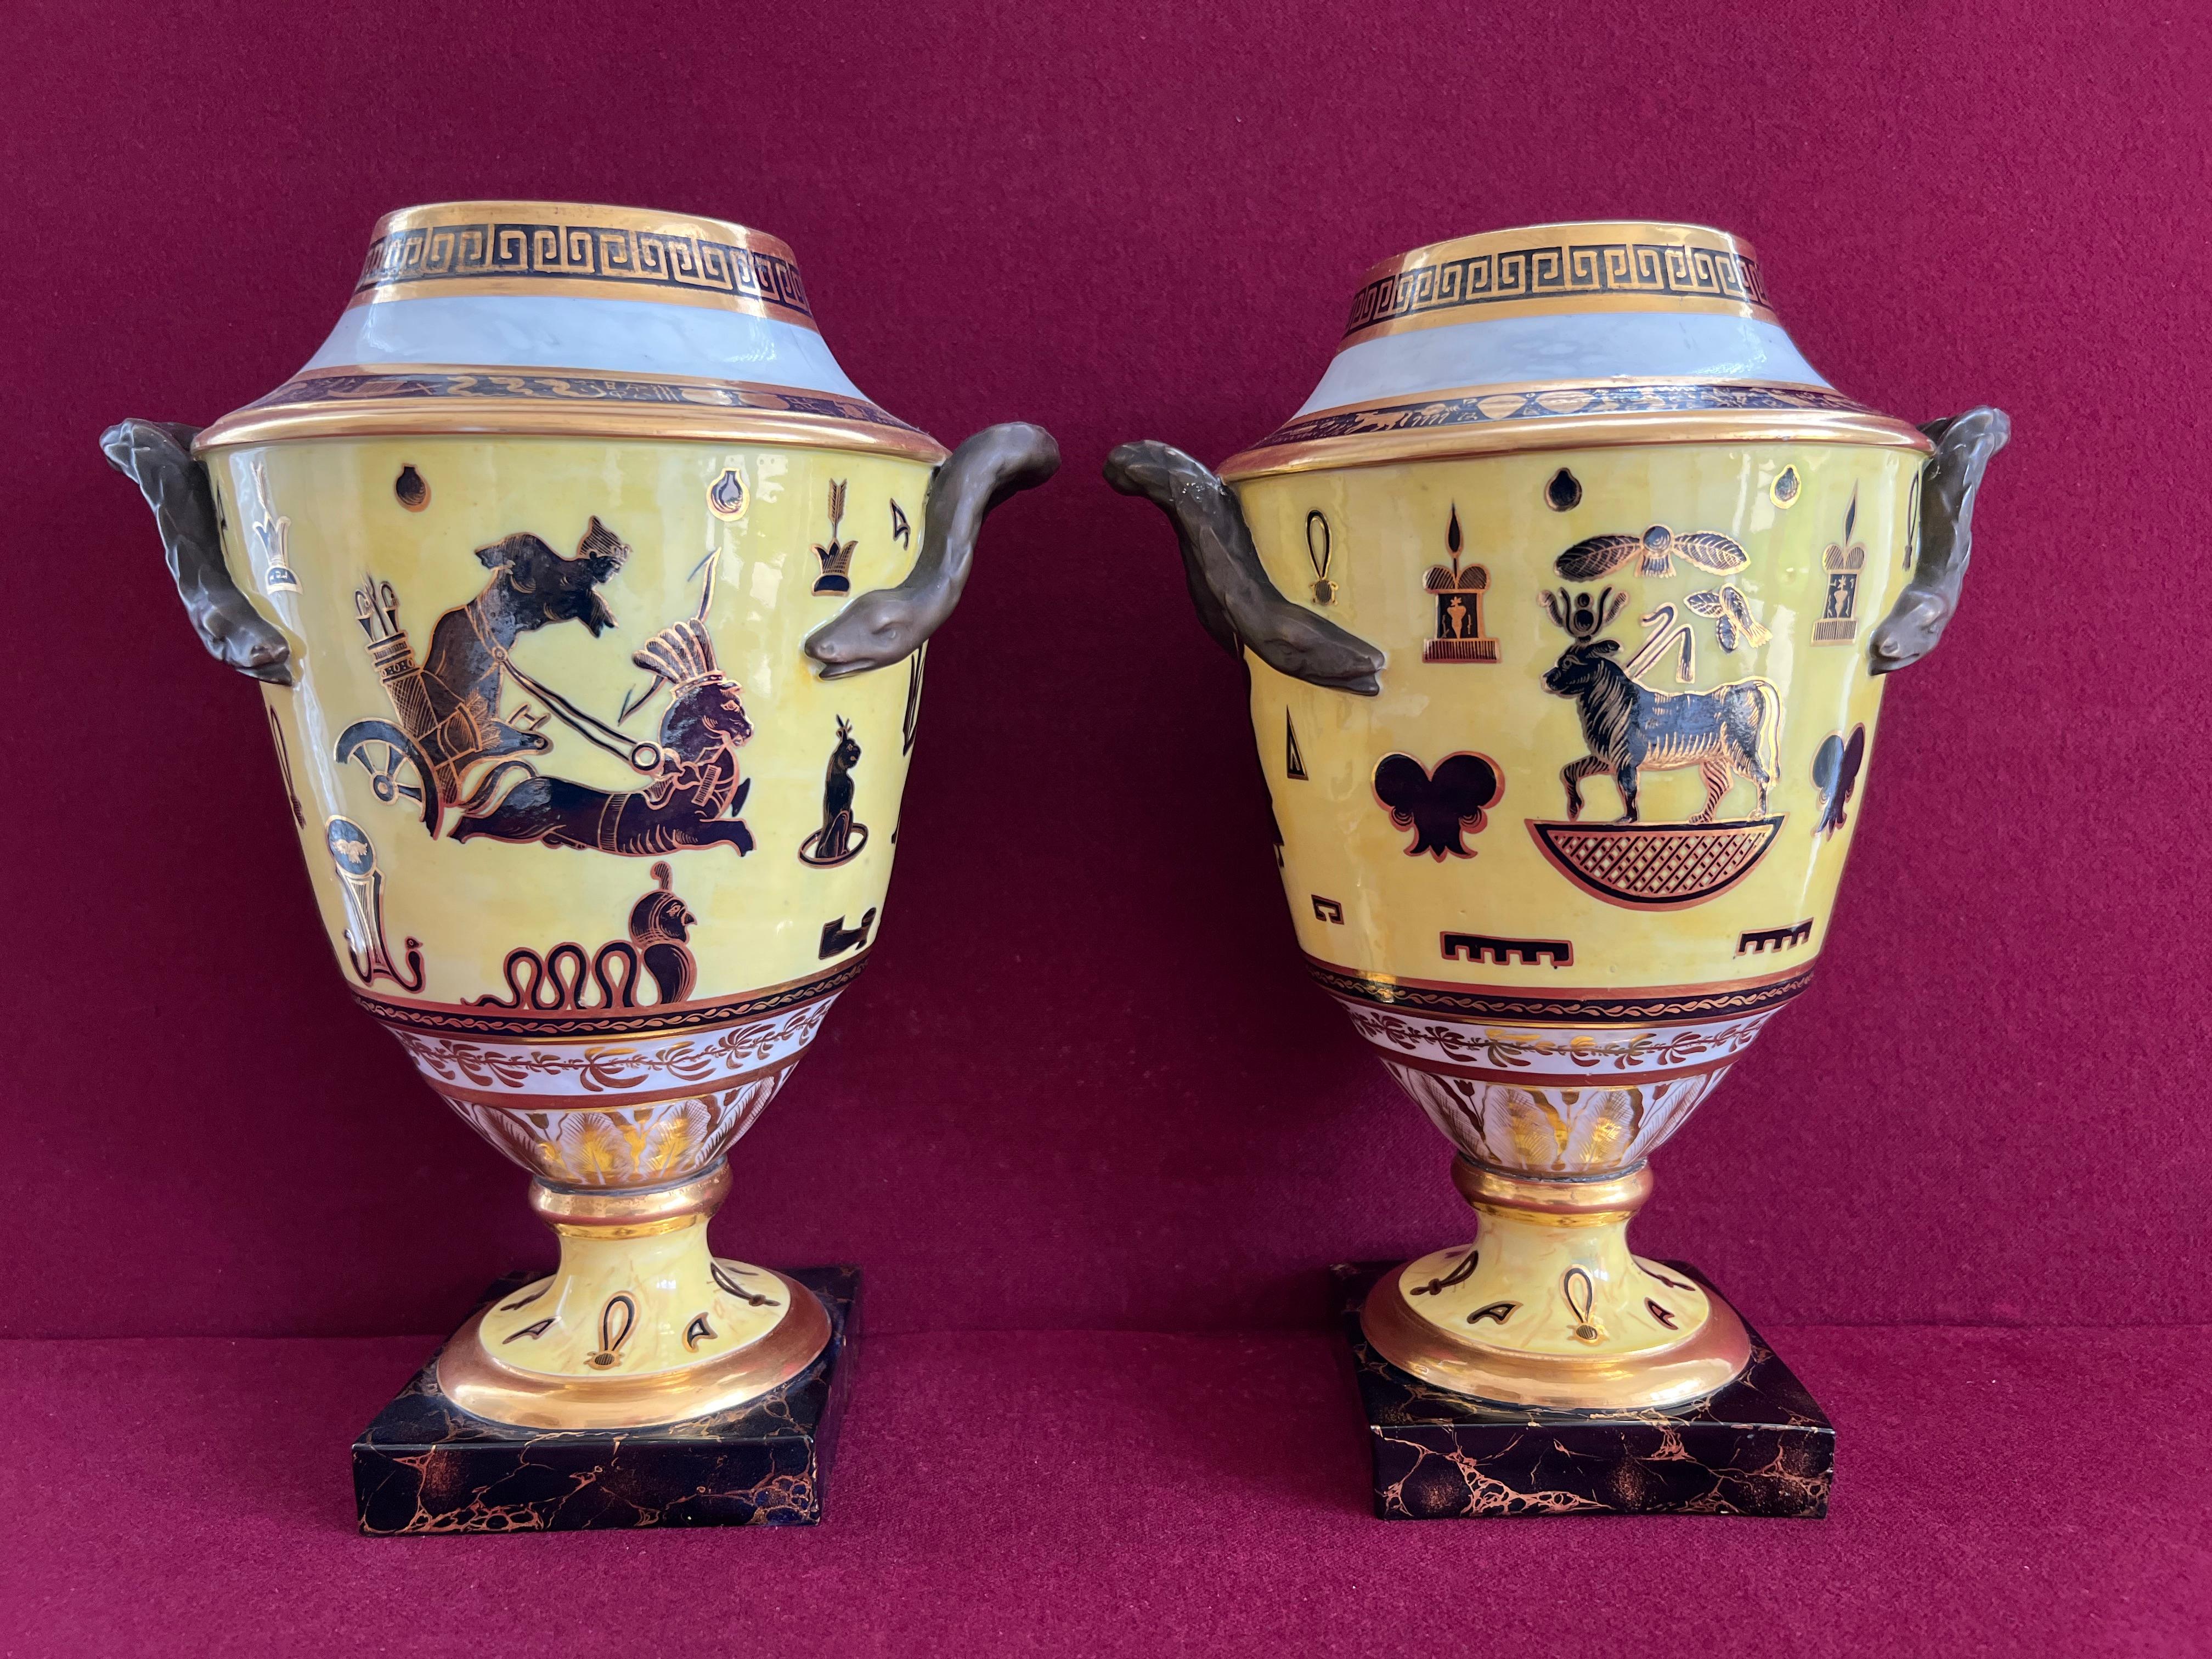 Rare paire de vases en porcelaine de Derby de la période Duesbury & Kean, à fond jaune, de style égyptien, vers 1805-1810. De forme effilée avec des poignées en forme de serpent, peinte en noir et doré avec des motifs égyptiens, l'épaule avec des